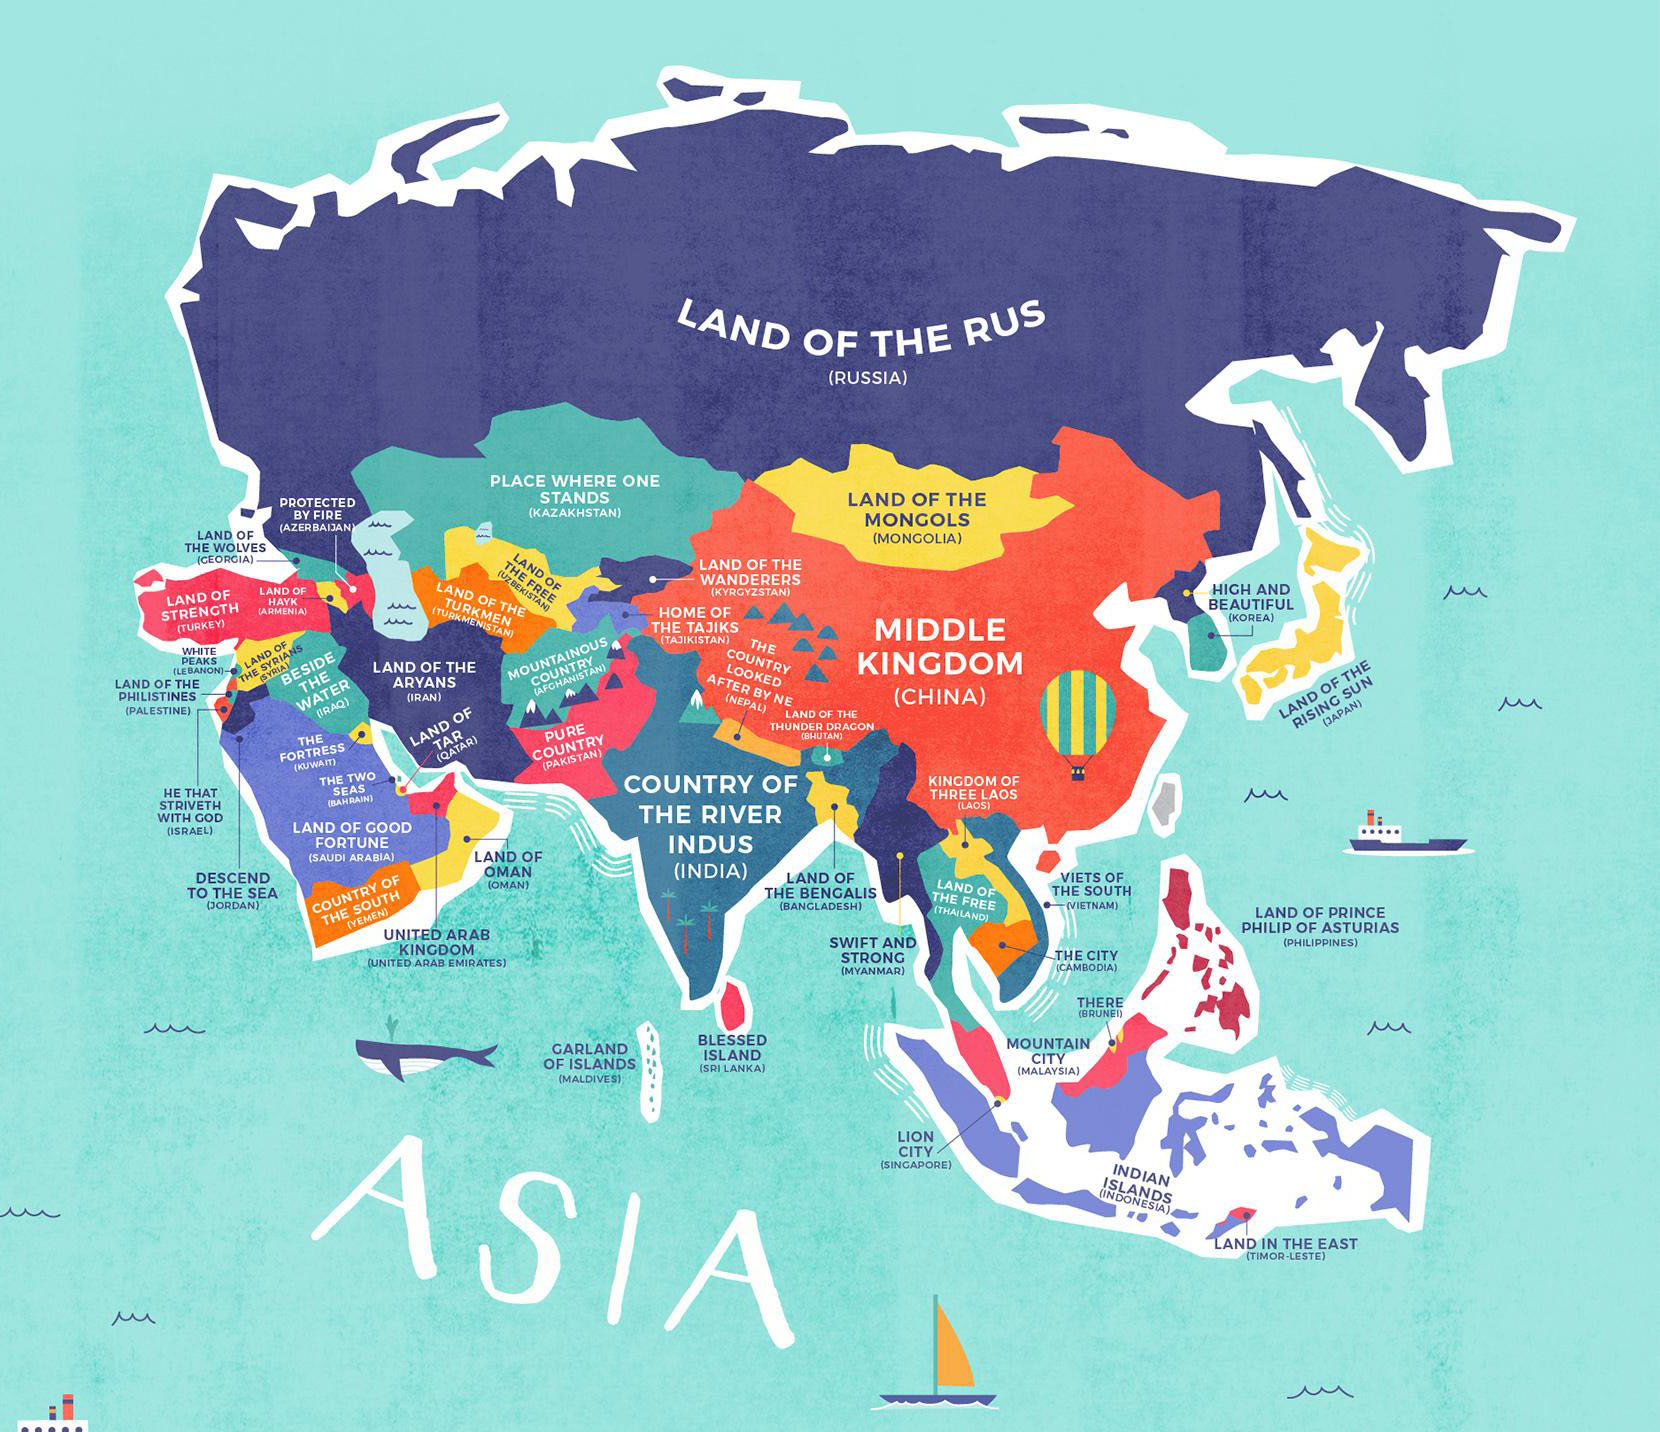 世界各国の 国名 の意味を分かりやすく翻訳した世界地図 Dna